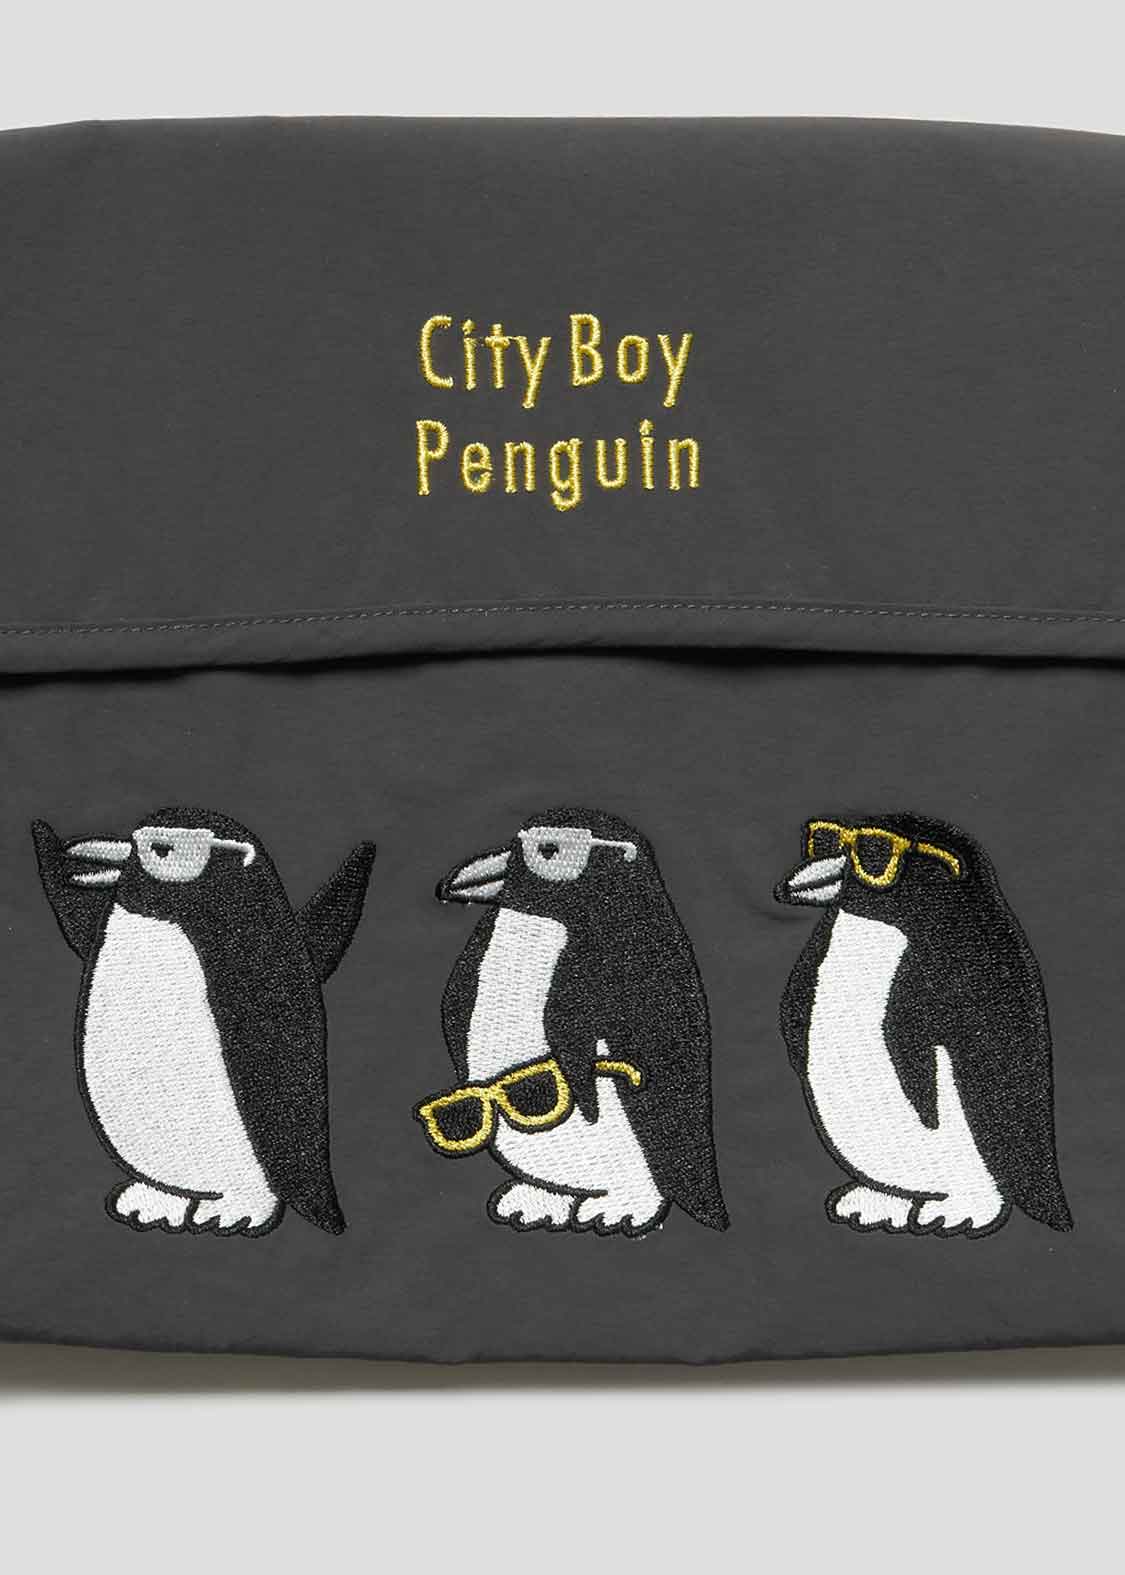 Mini Sacoche (City boy Penguin) - excludes shoulder strap